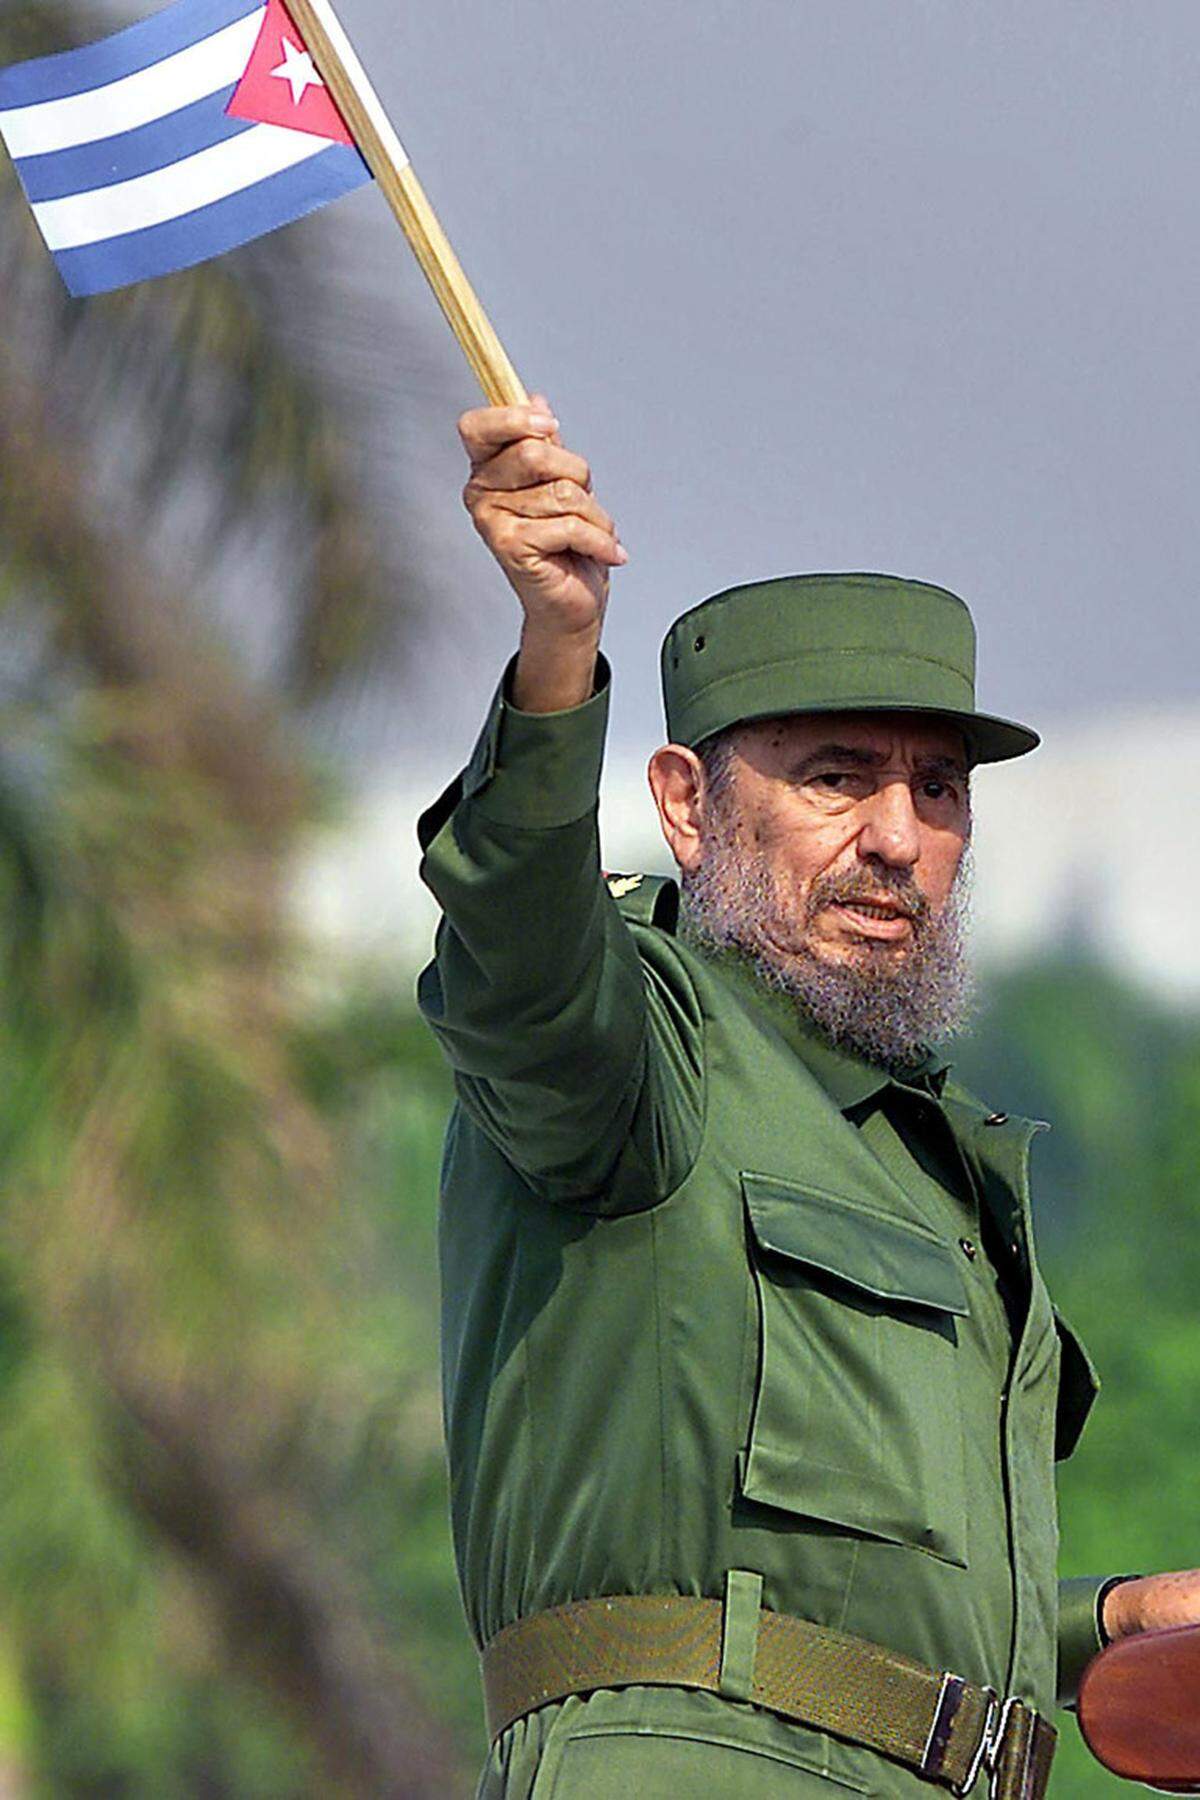 Im Jahr 1934 wurde der kubanische Präsident Ramón Grau San Martín abgesetzt. Die Folge: die Aufhebung bzw. Erneuerung des Vertrages. In der neuen Version blieb nur Abschnitt 7 über das Recht der Nutzung der Bucht als Marinestützpunkt erhalten, der ursprünglich auf 99 Jahre beschränkte Pachtvertrag wurde auf unbestimmte Zeit verlängert. 1938 wurde die Pachtgebühr auf 4085 Dollar erhöht. Seit der Revolution 1959 und der Machtergreifung Fidel Castros (Bild) akzeptiert Kuba die amerikanische Präsenz nicht mehr und fordert die Rückgabe der Bucht.